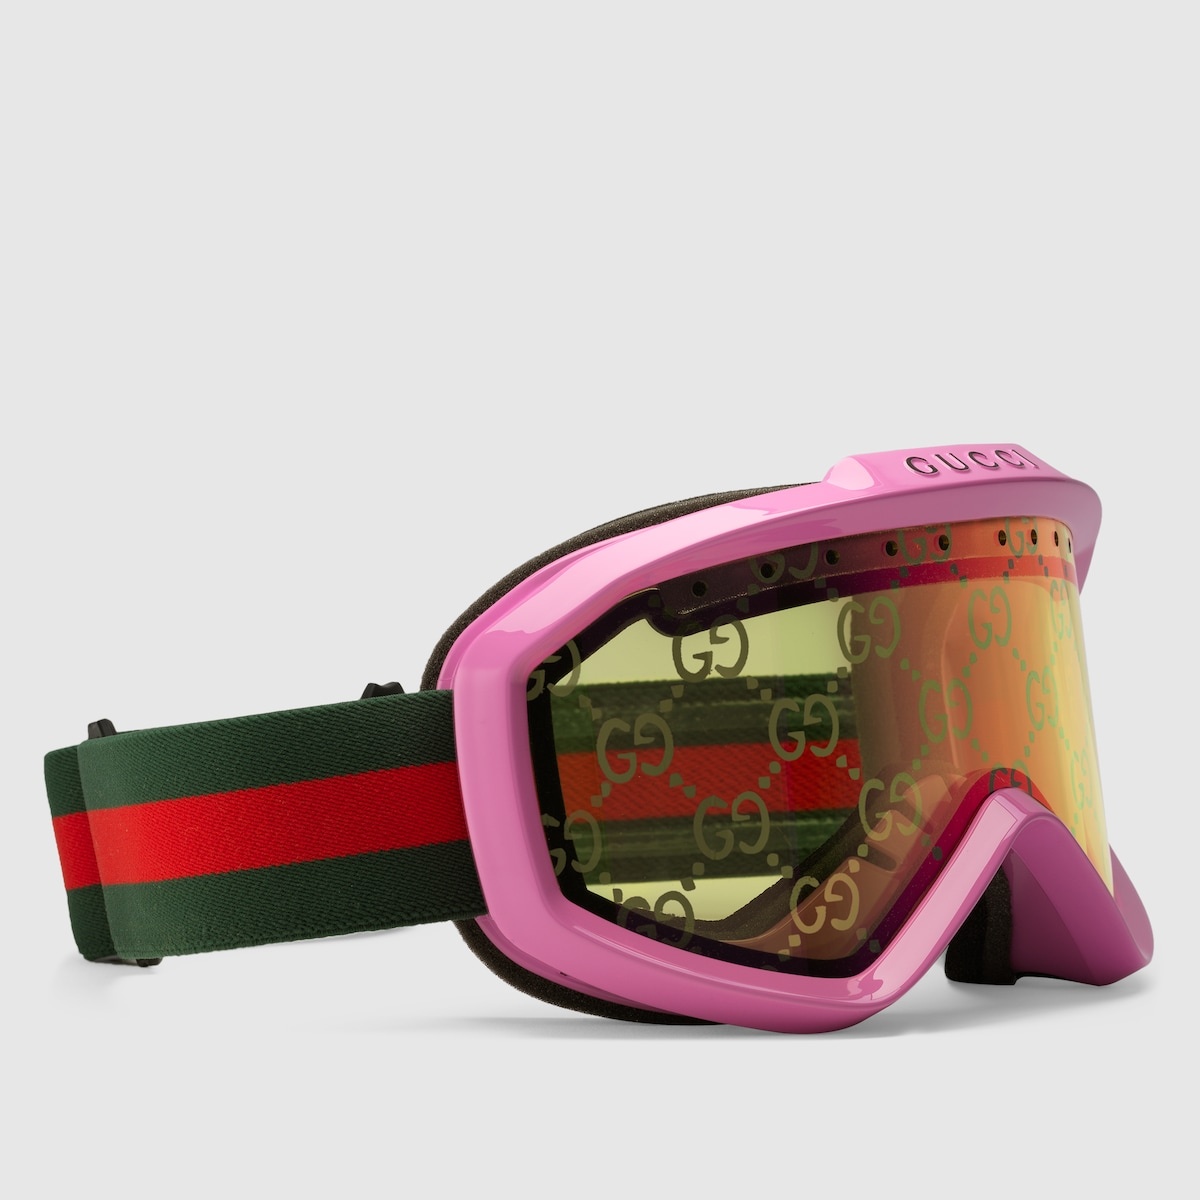 Gucci ski goggles